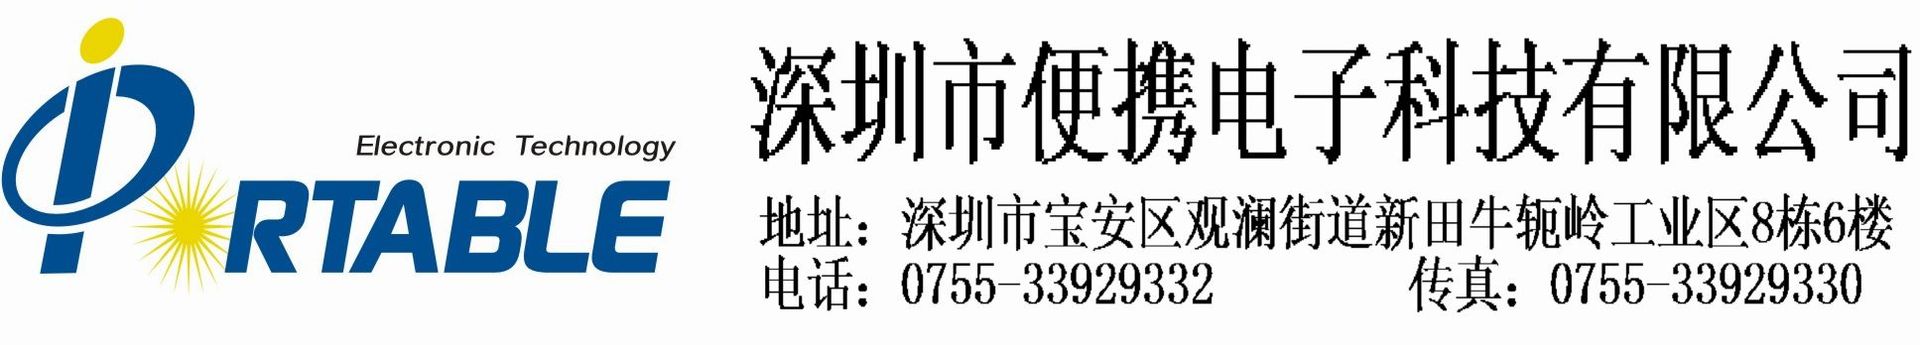 Shenzhen Portable Electronic Technology Co.,ltd logo